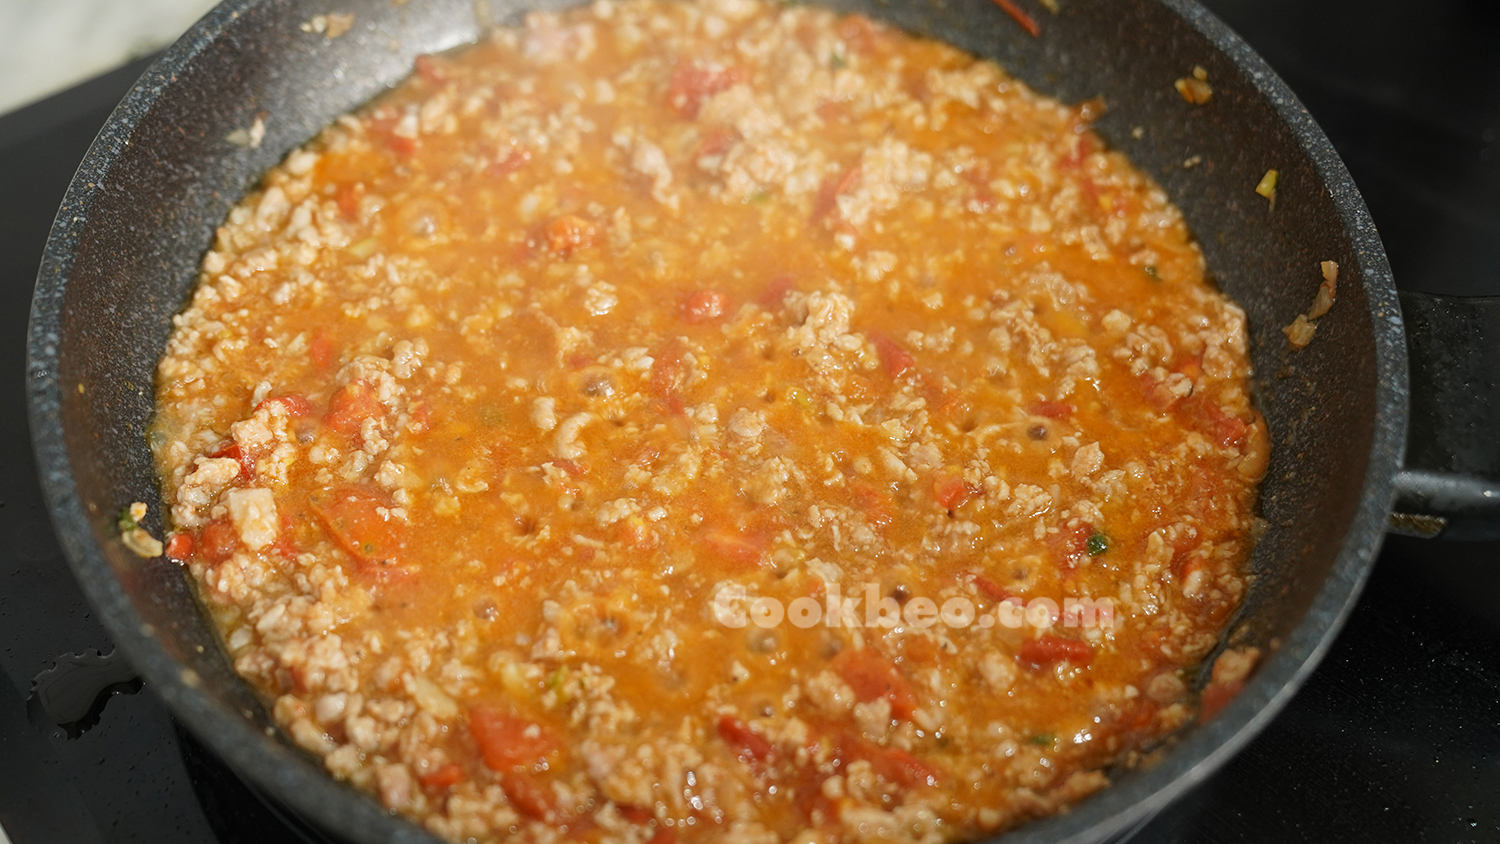 sốt cà chua với thịt băm trong chảo